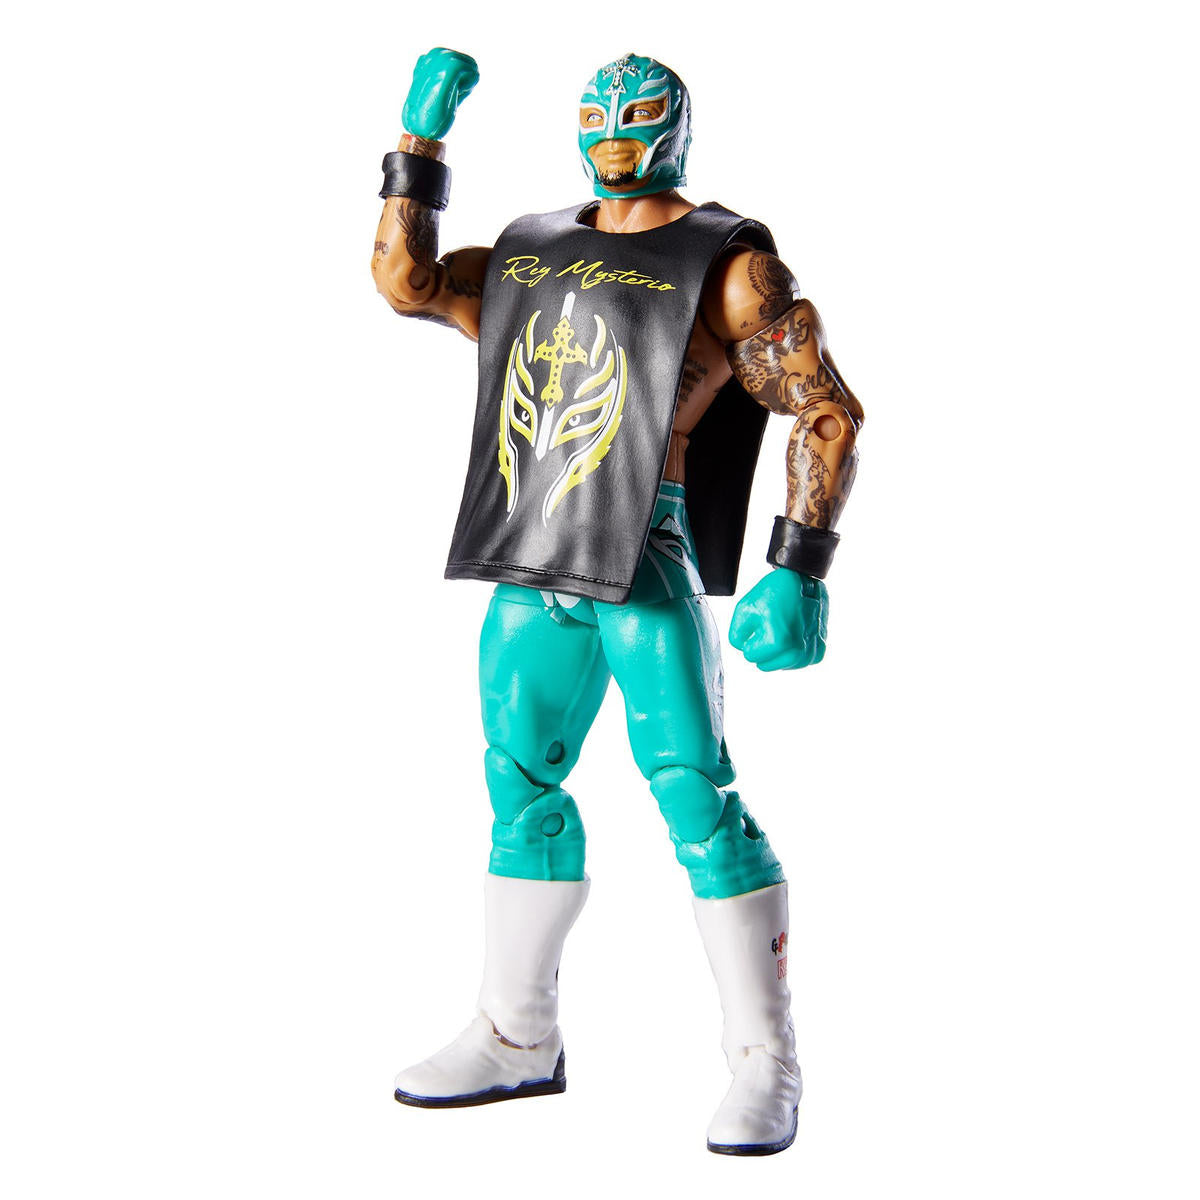 2019 WWE Mattel Elite Collection Series 69 Rey Mysterio